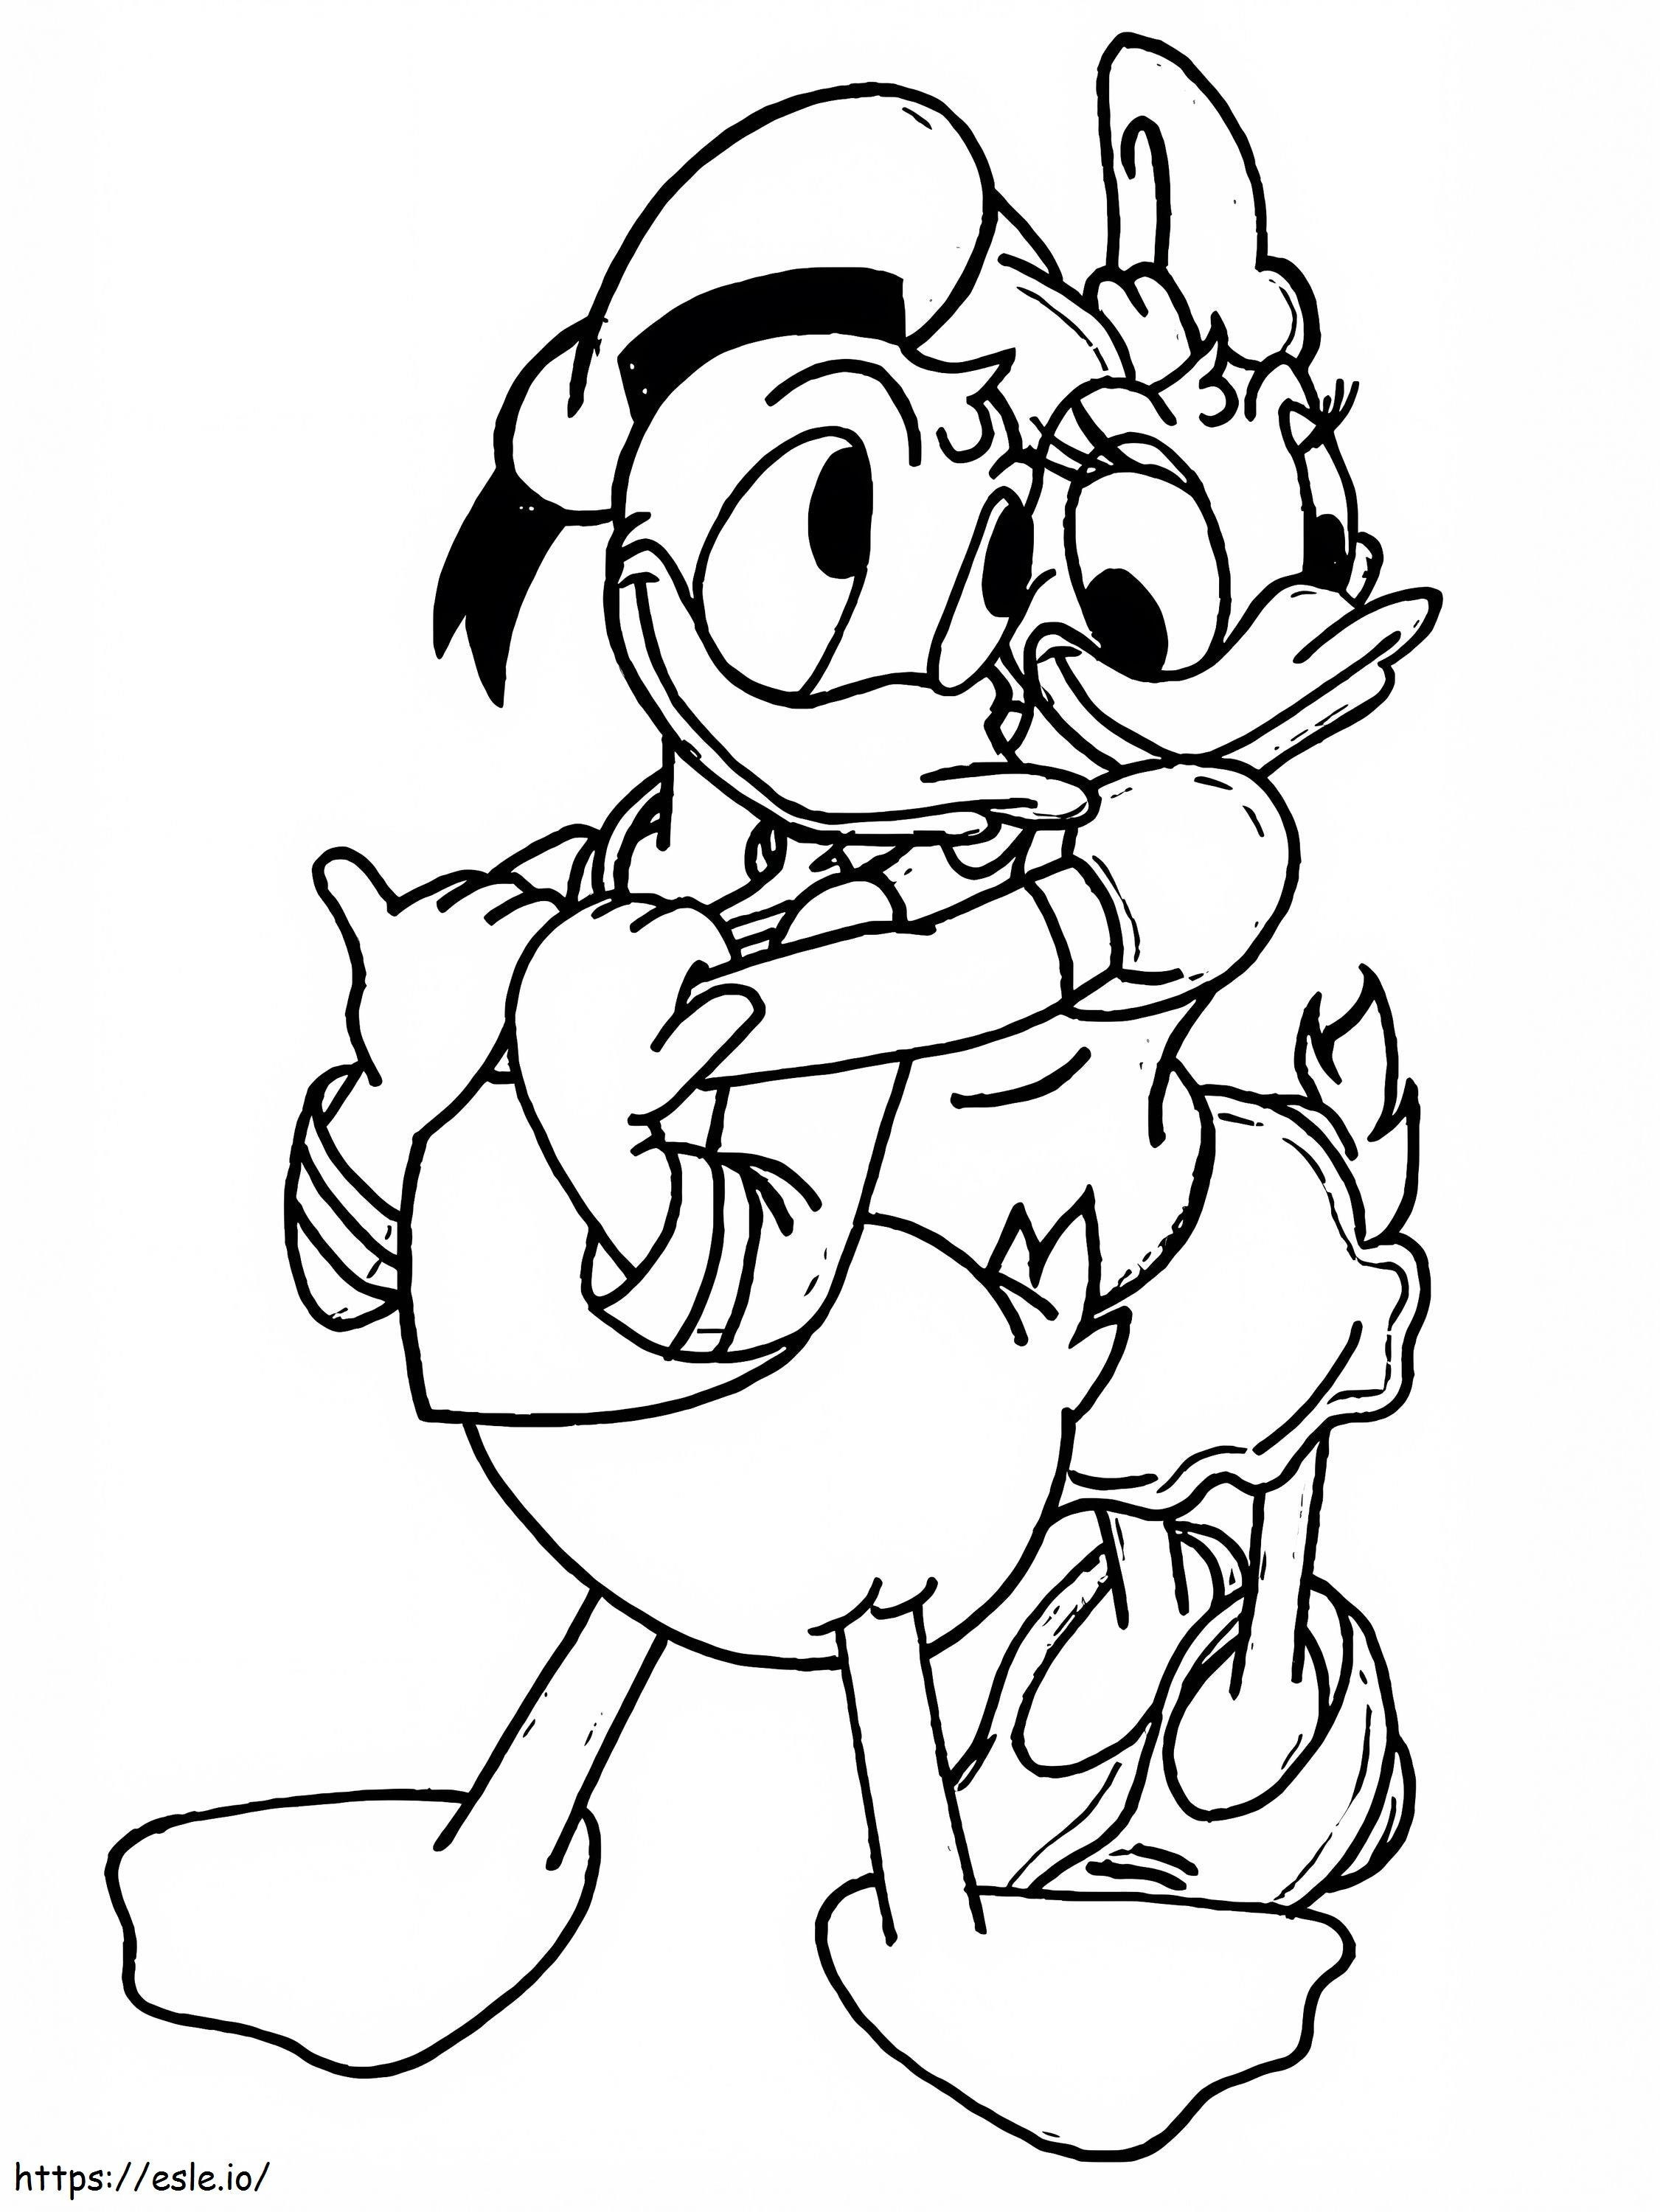 Donald cu Daisy de colorat